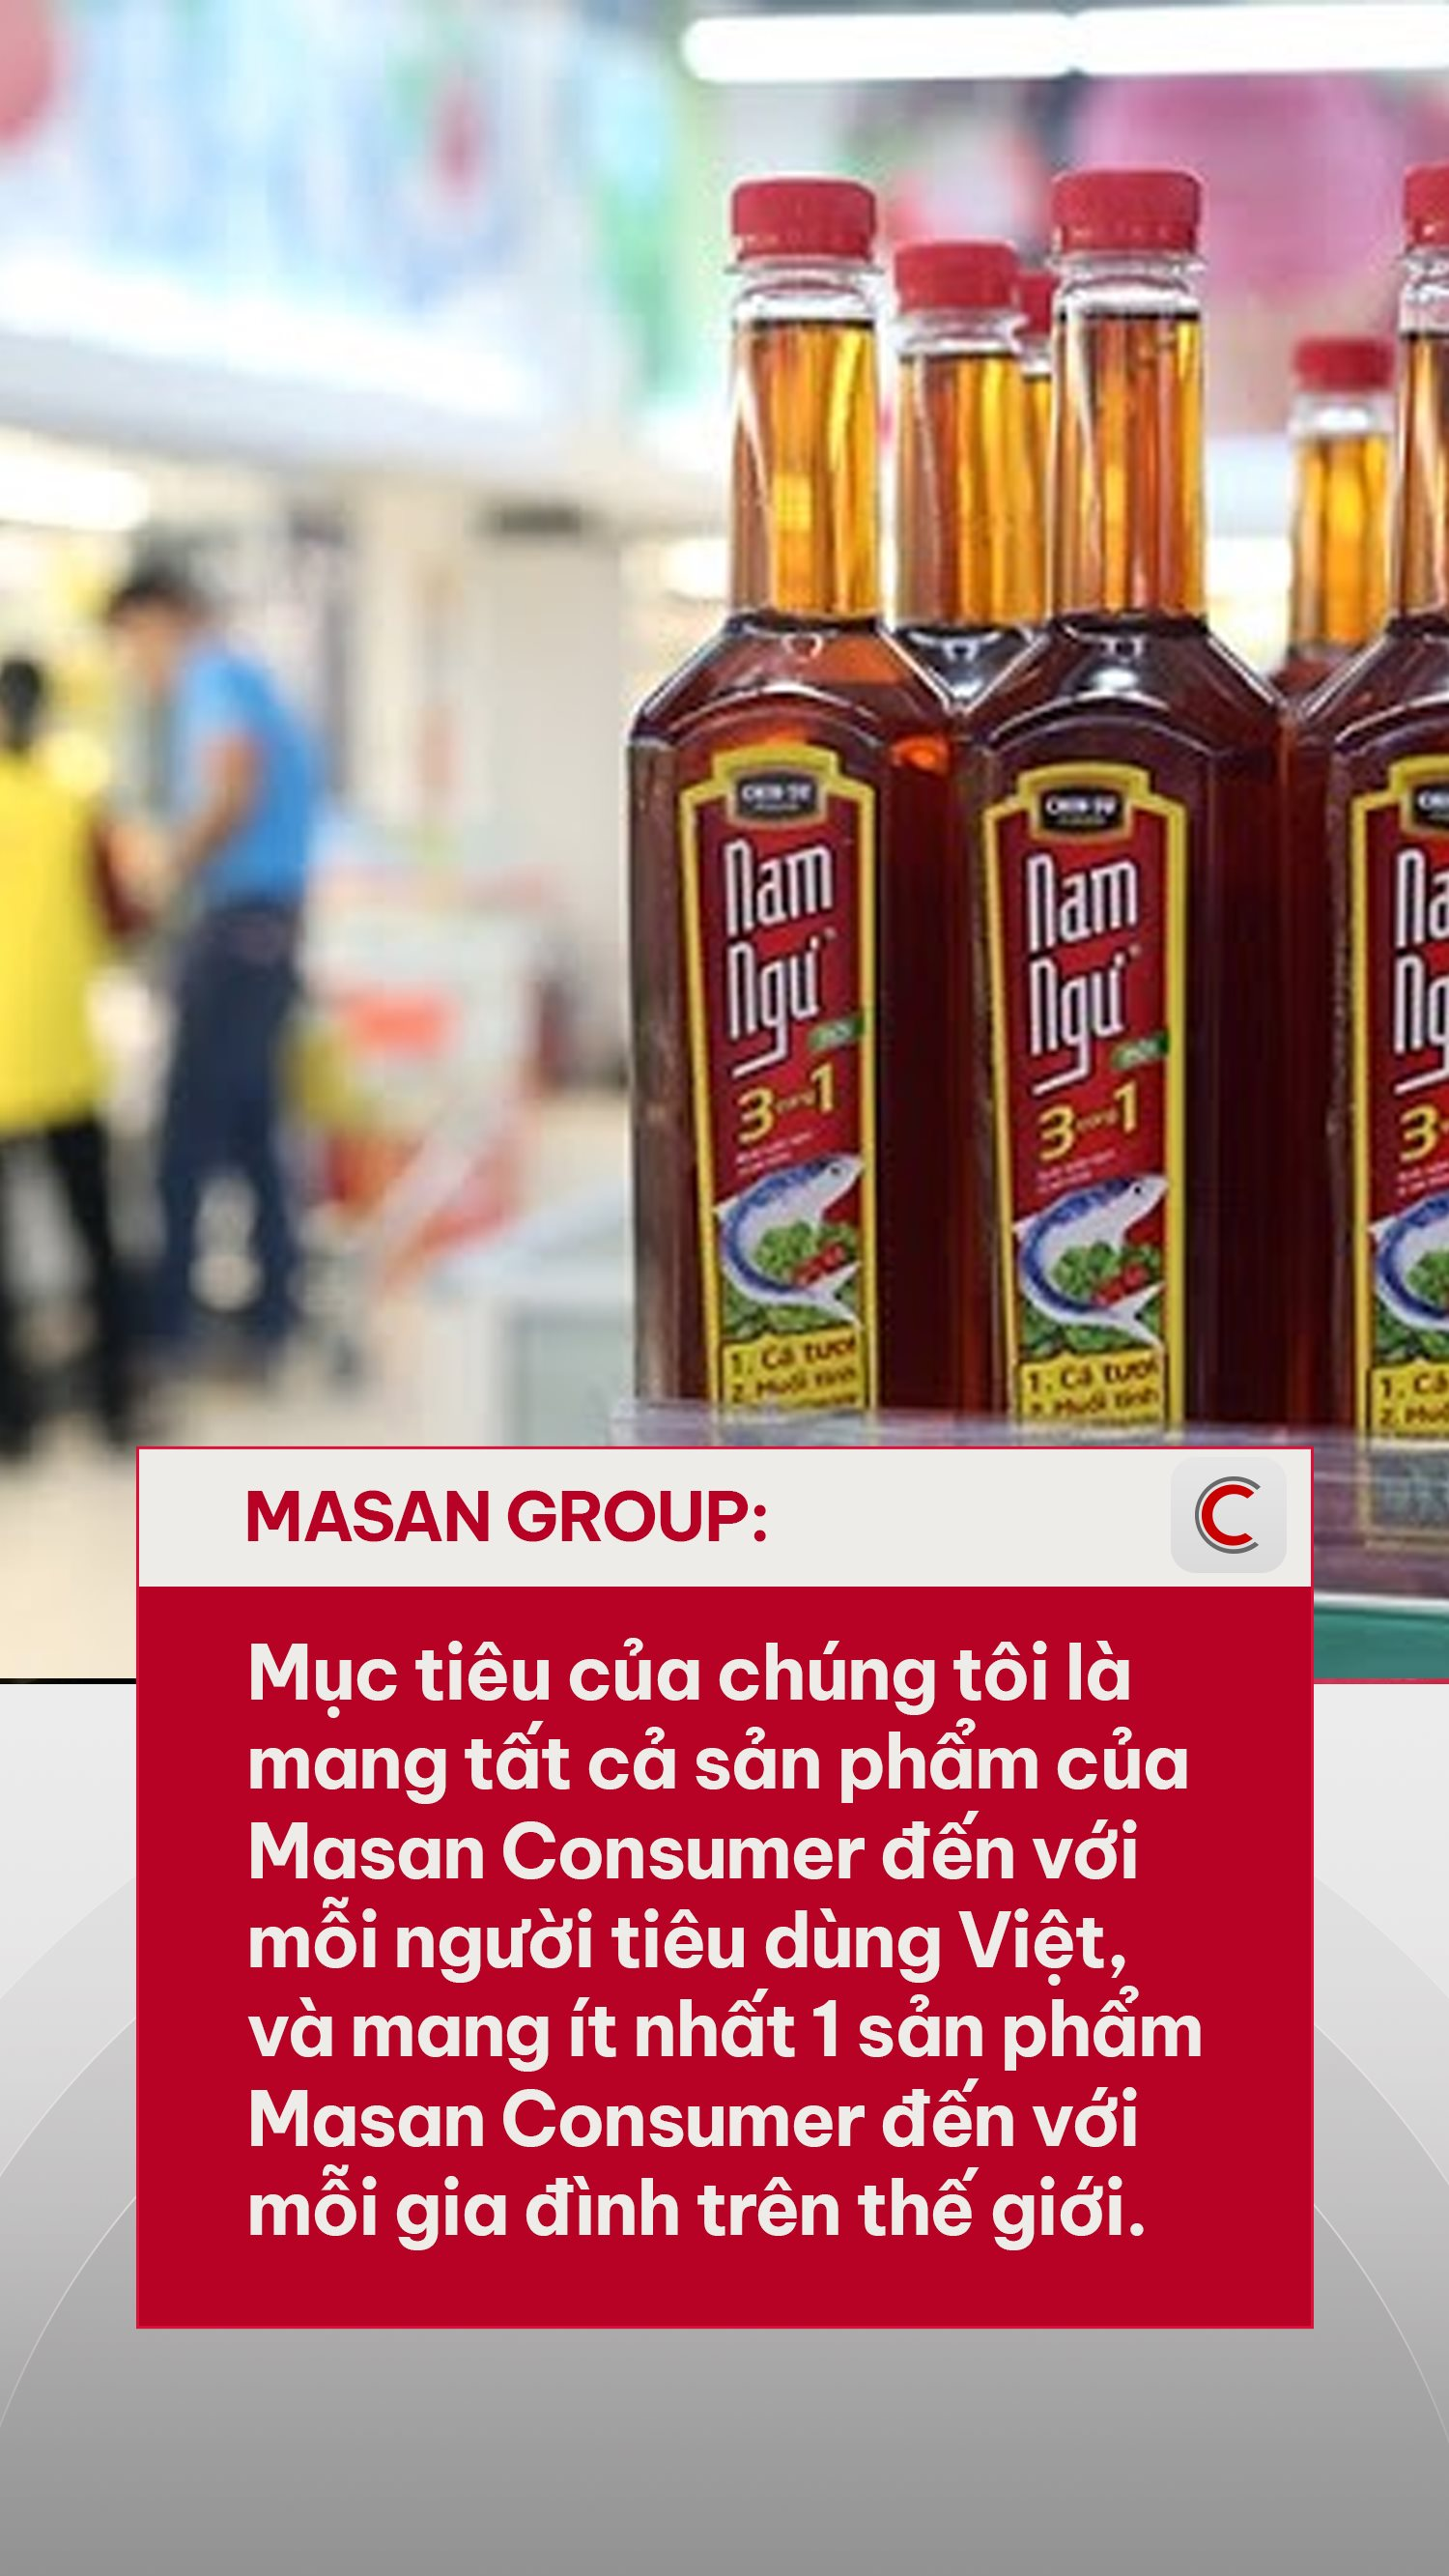 Cứ 10 bát nước mắm thì 7 bát của Masan, tỷ phú Nguyễn Đăng Quang hé lộ tham vọng bước chân ra thị trường 3.100 tỷ USD- Ảnh 1.